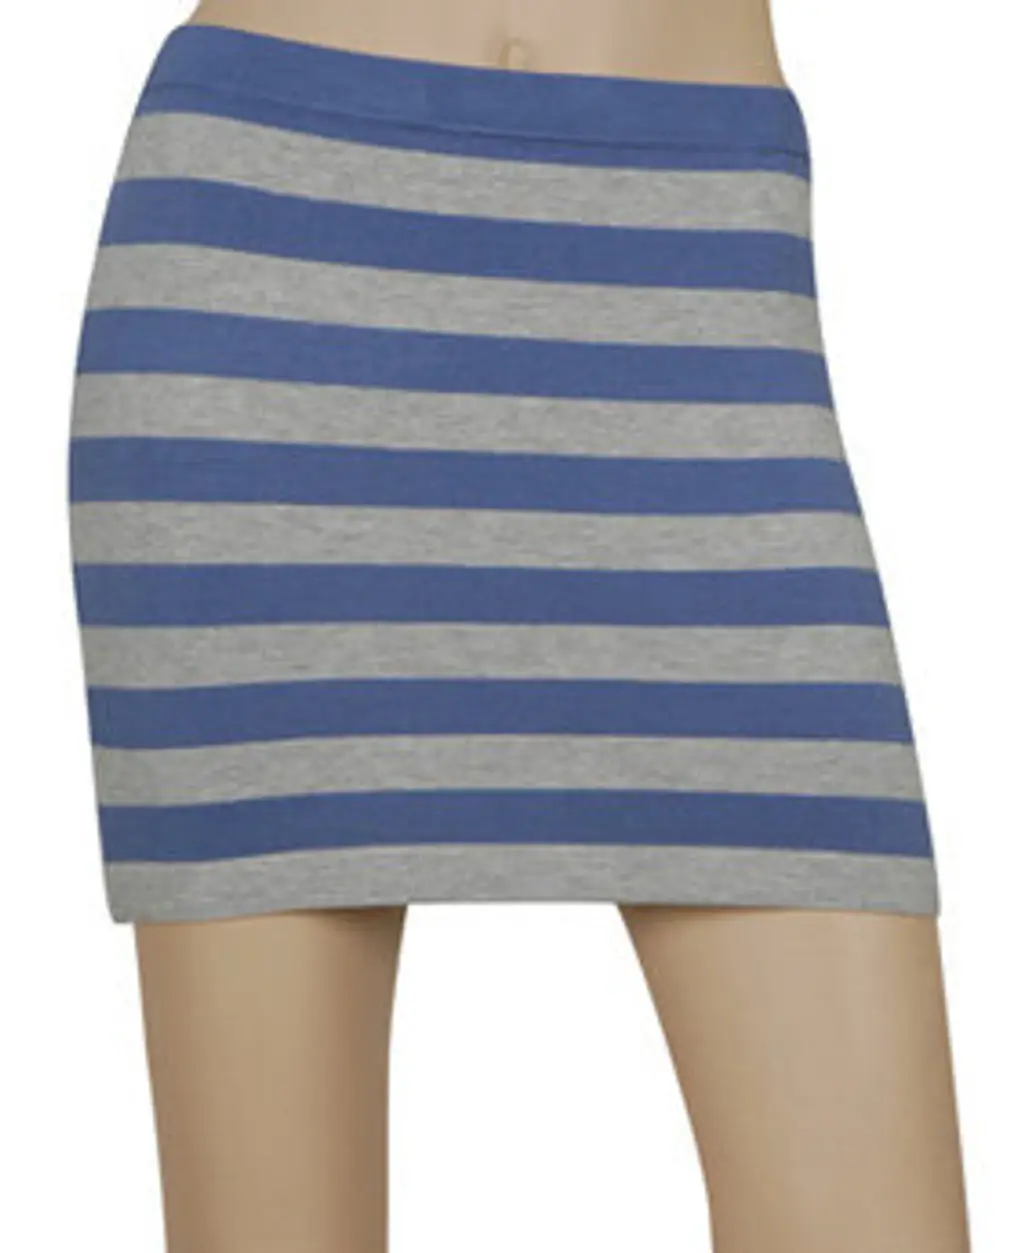 2. Forever 21 Striped Knit Skirt